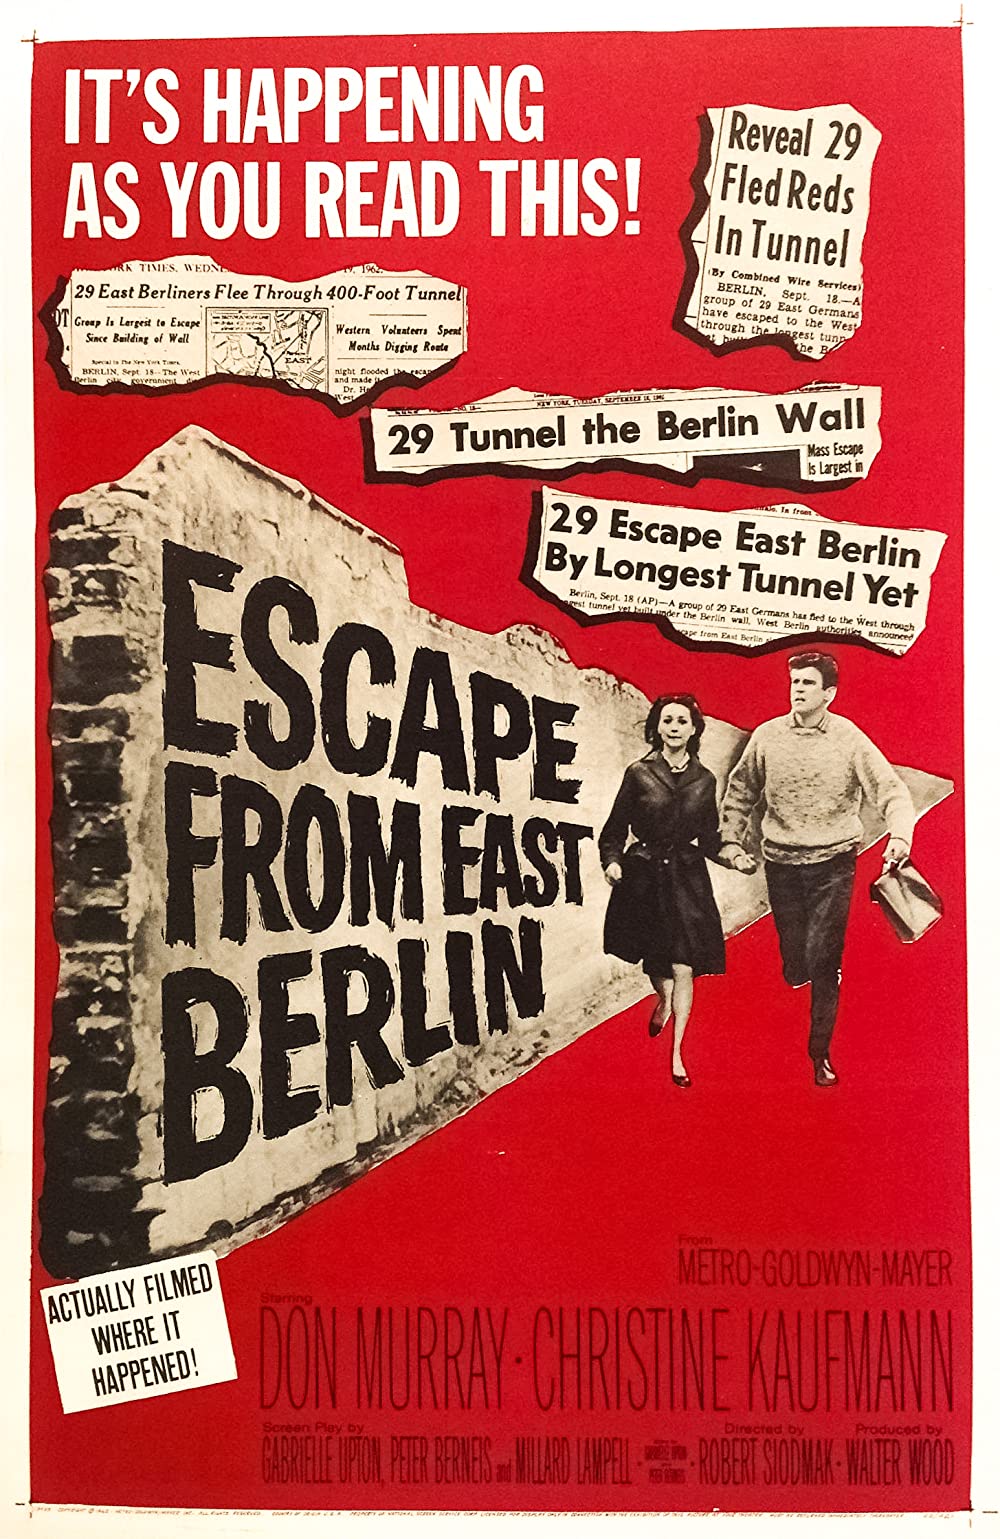 Filmbeschreibung zu Escape From East-Berlin - Tunnel 28